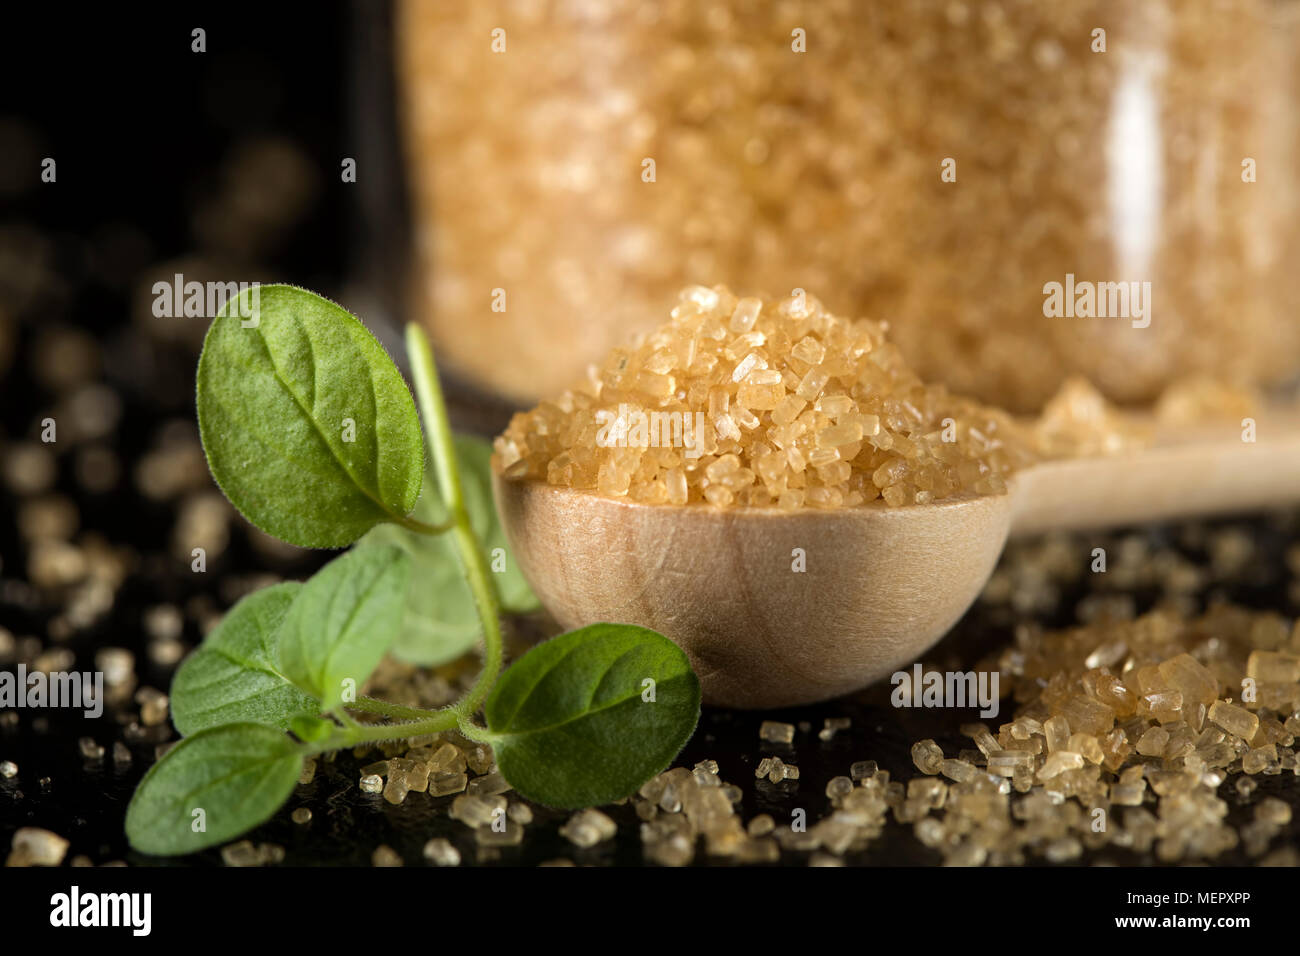 Chiusura del piccolo cucchiaio woode riempito con lo zucchero di canna in ardesia scura Foto Stock